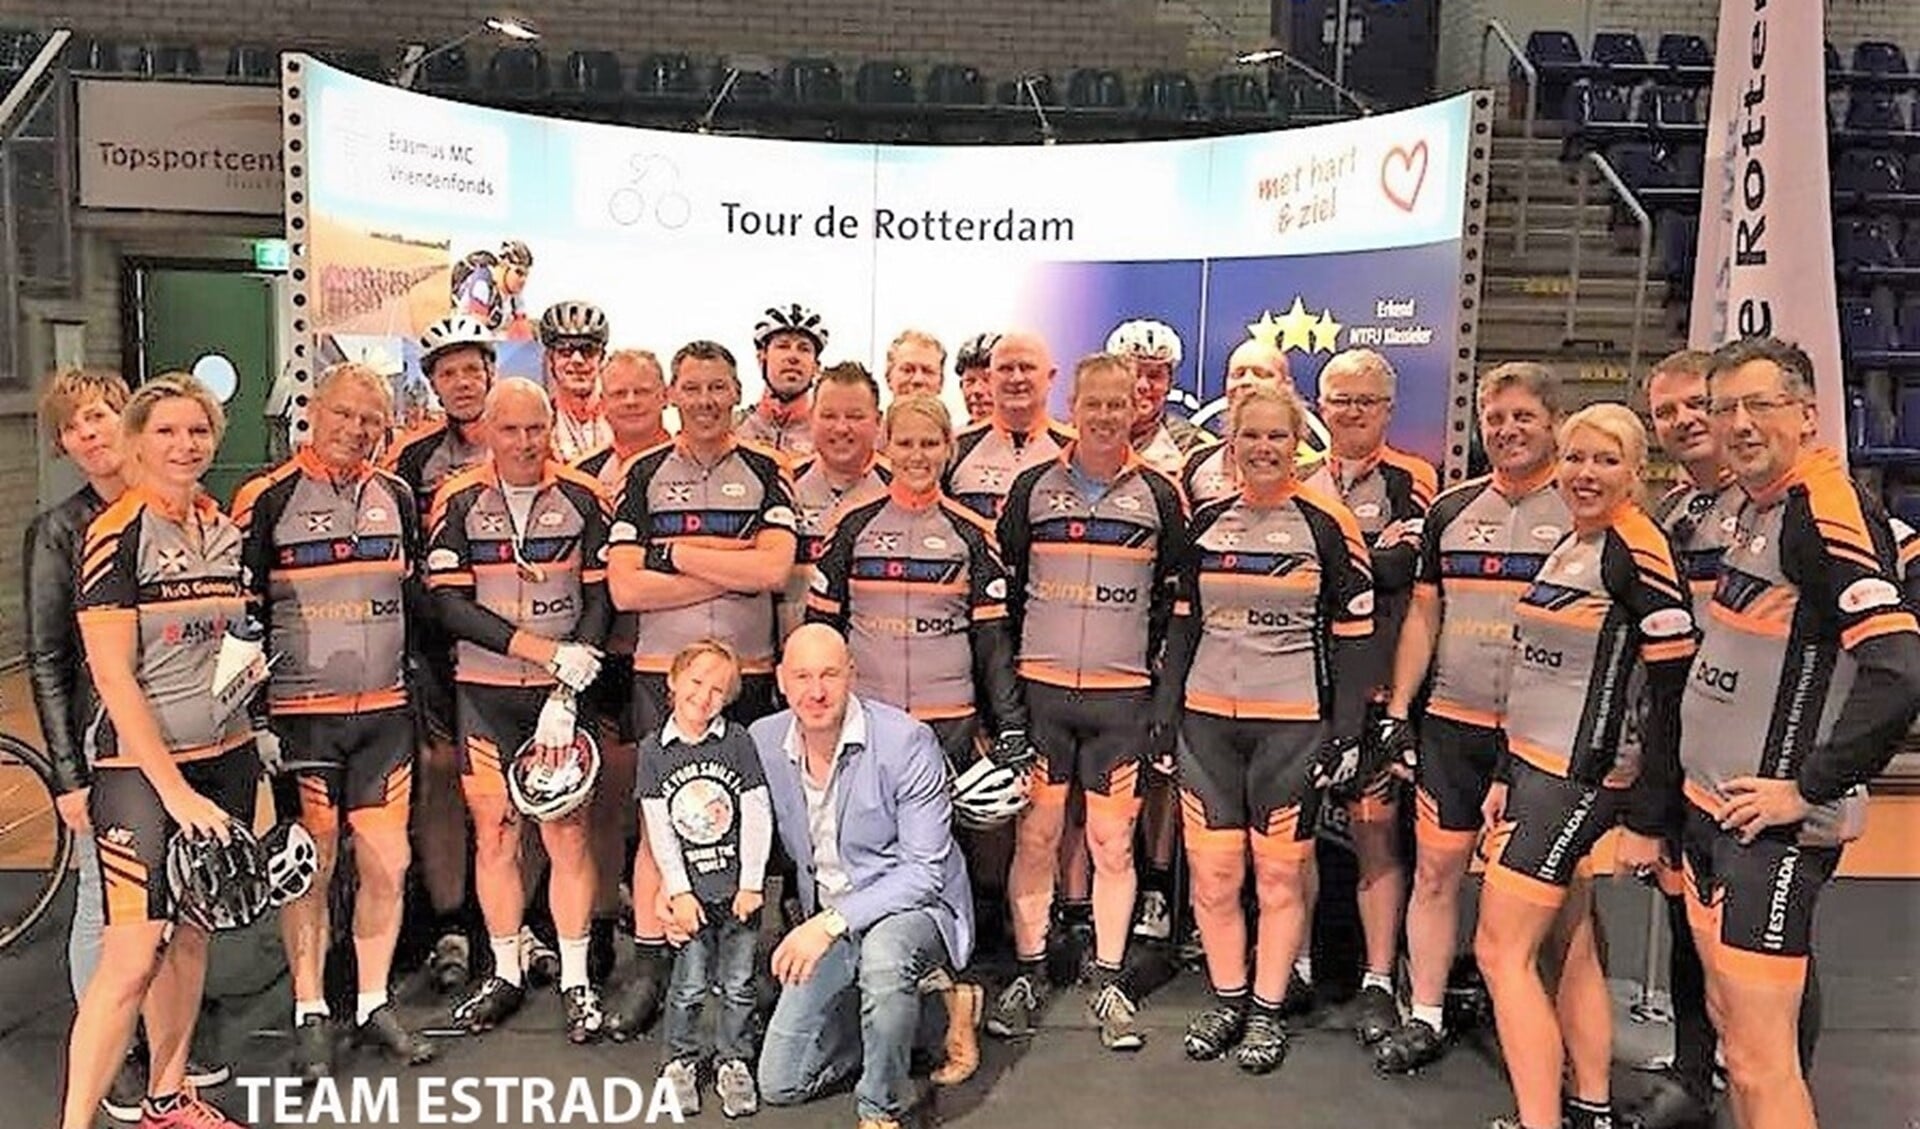 Estrada is oprecht trots dat zij dit jaar voor de derde keer op rij met het team aan de start staan bij de Tour de Rotterdam!